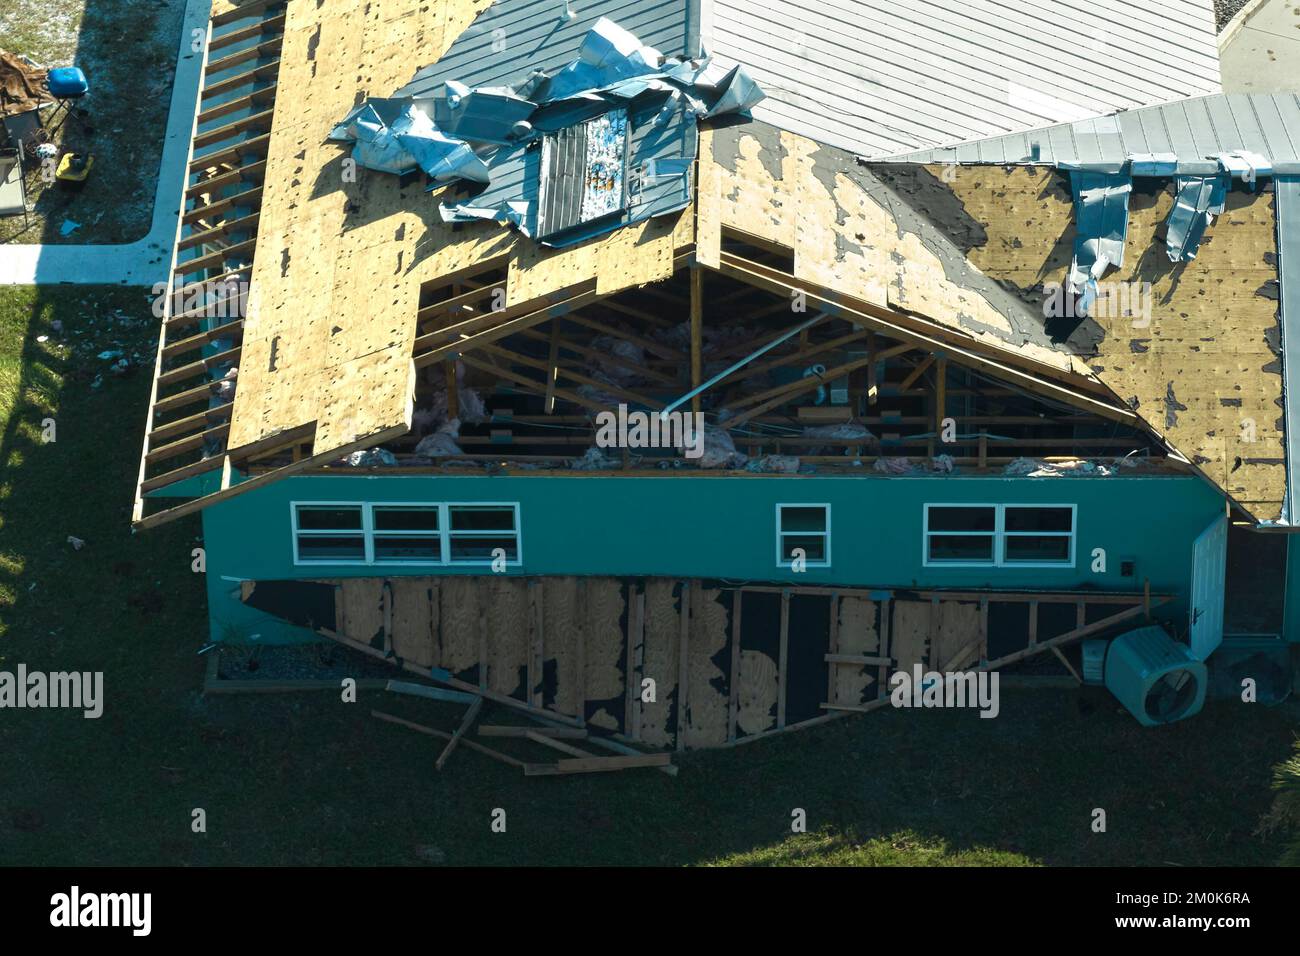 Hurrikan Ian zerstörte ein Haus in Florida Wohngebiet. Naturkatastrophen und ihre Folgen Stockfoto